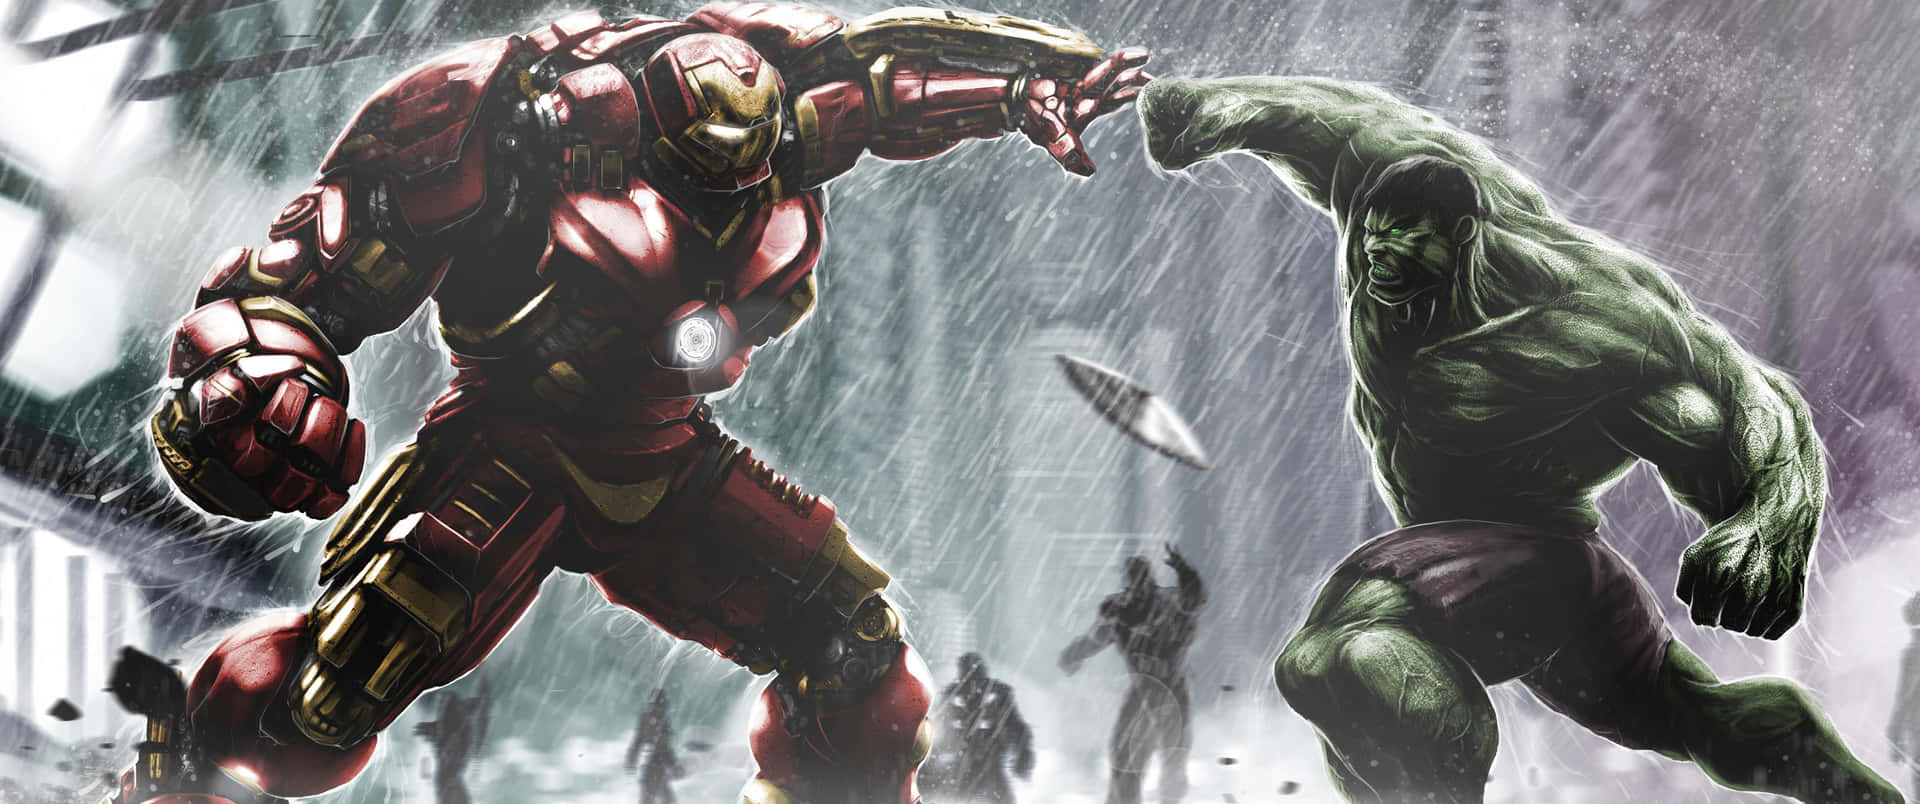 Hulky Iron Man Peleando Bajo La Lluvia.